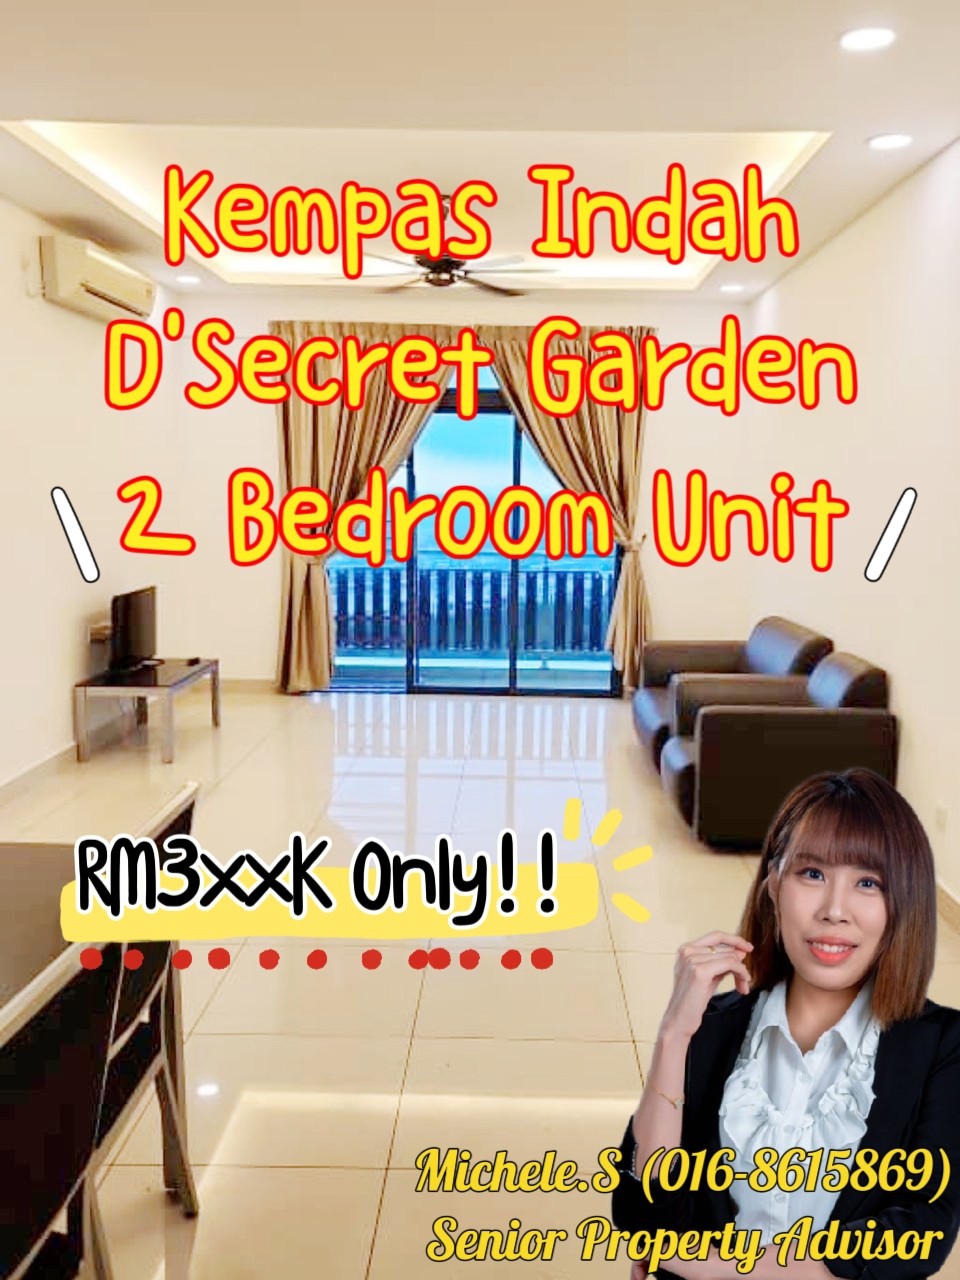 Kempas Indah D Secret Garden 2 Bedroom Unit For Sale